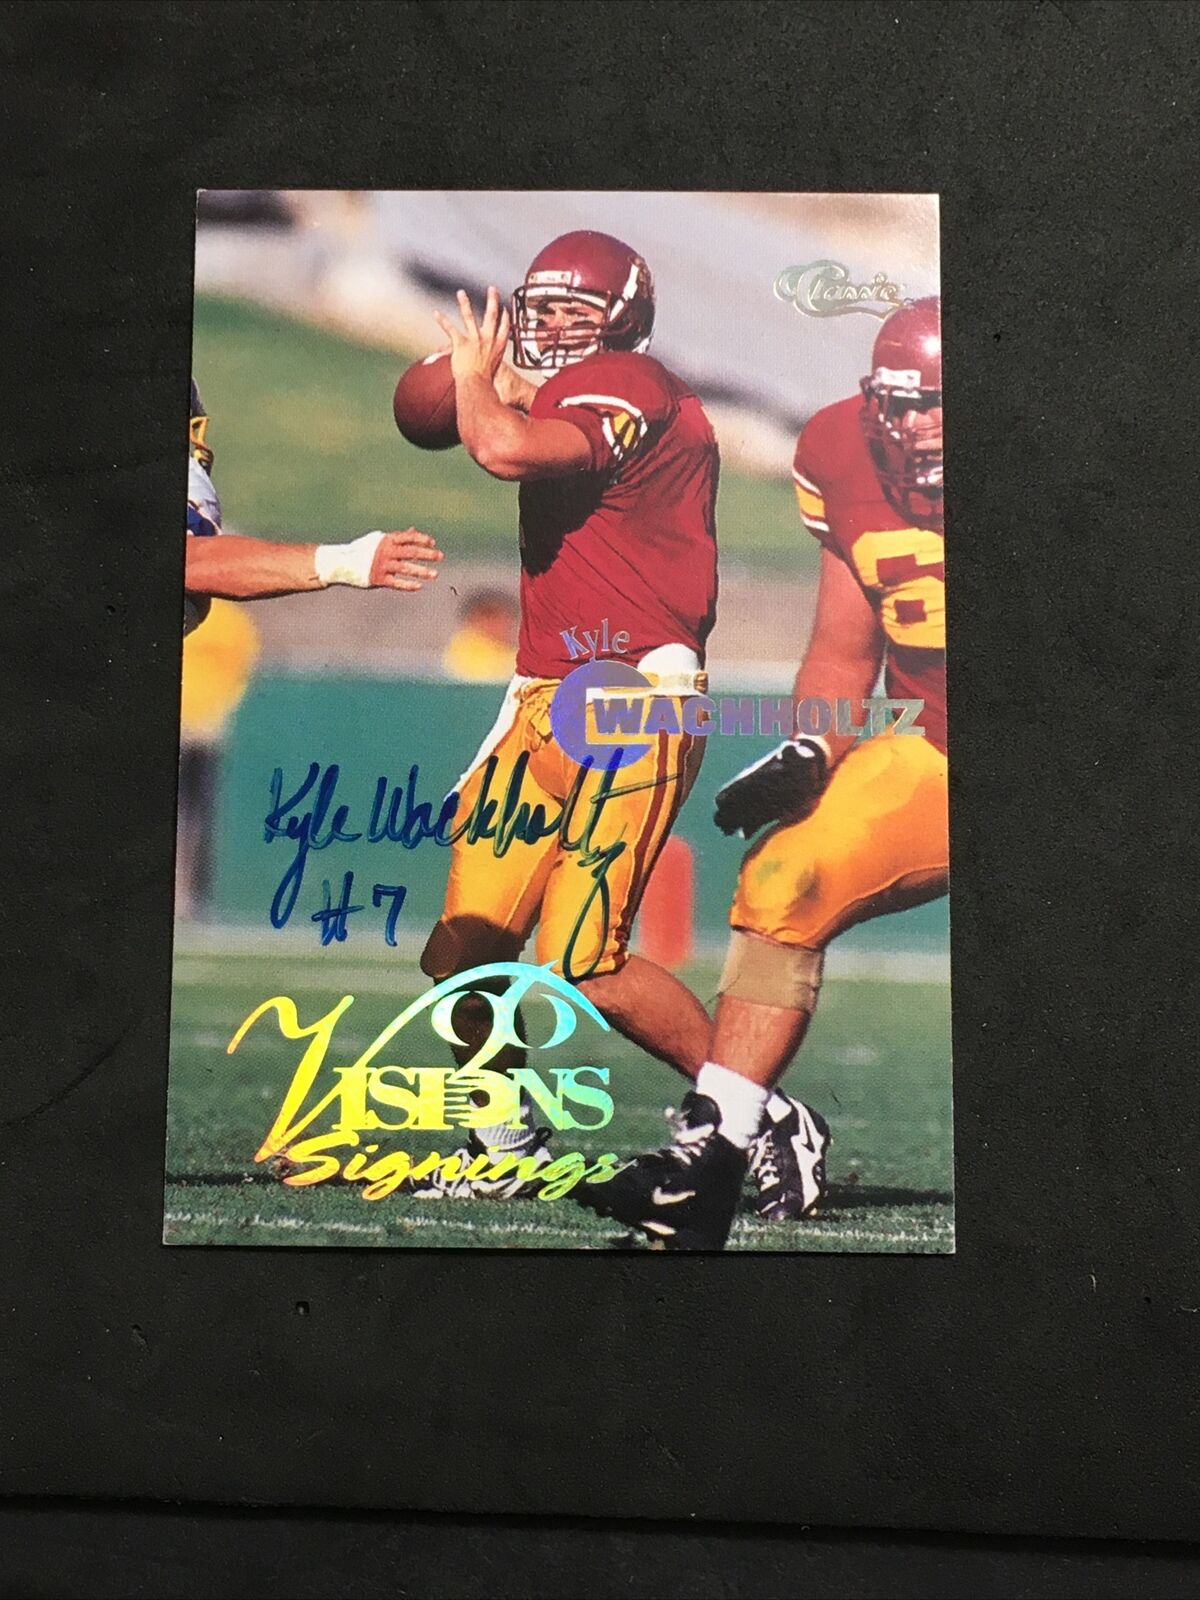 Kyle Wachholtz Usc Trojans Football 1996 Classic Visions Auto Autograph Card